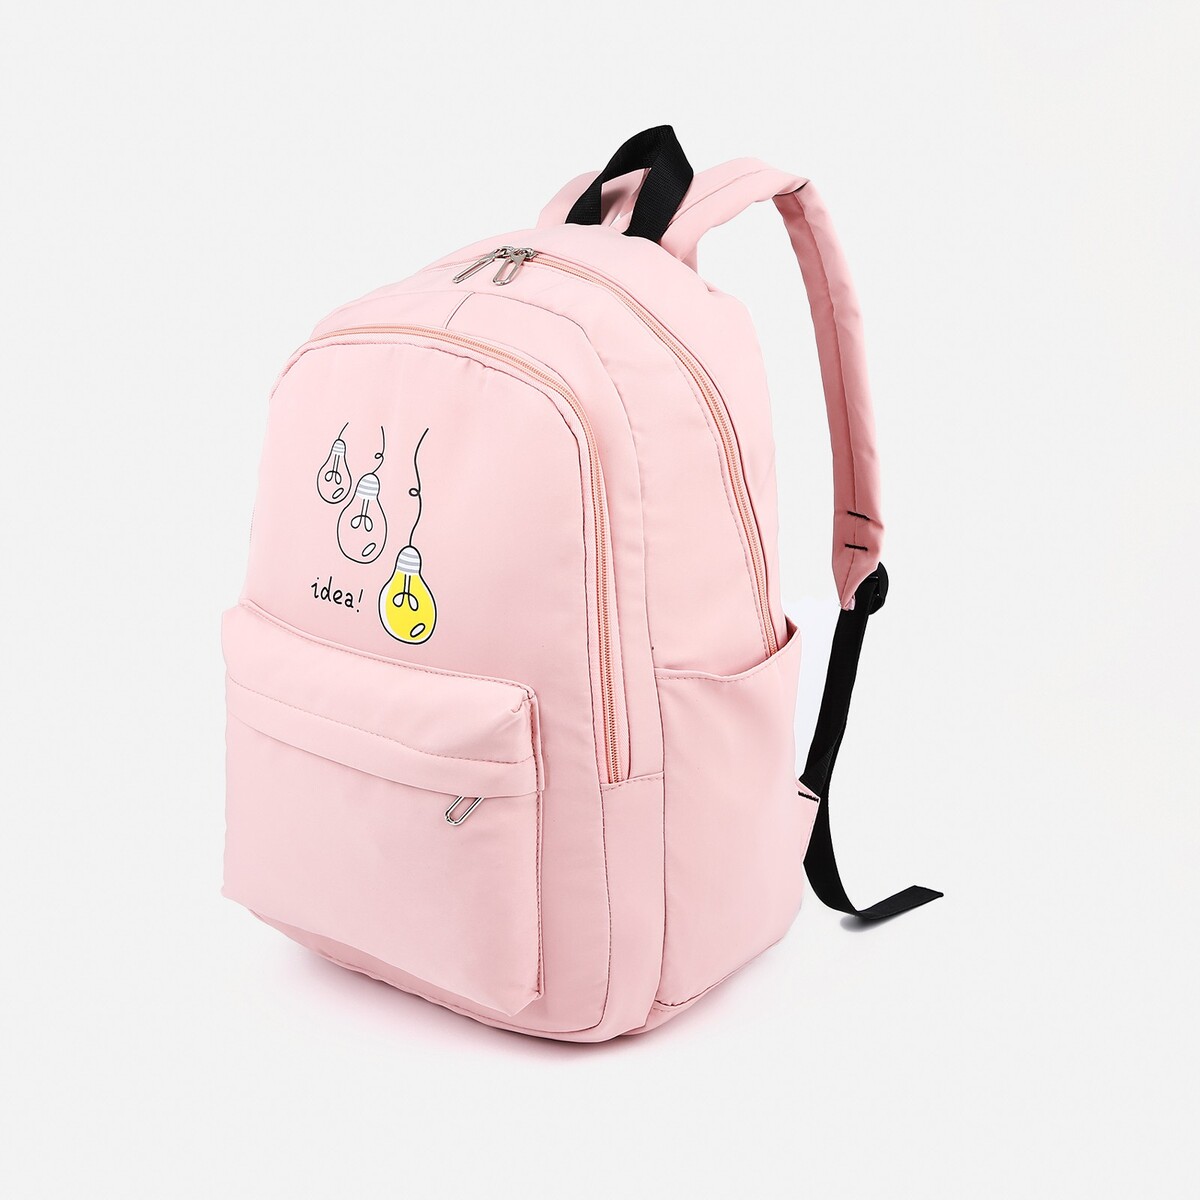 Рюкзак молодежный из текстиля, 2 отдела на молниях, 3 кармана, цвет розовый